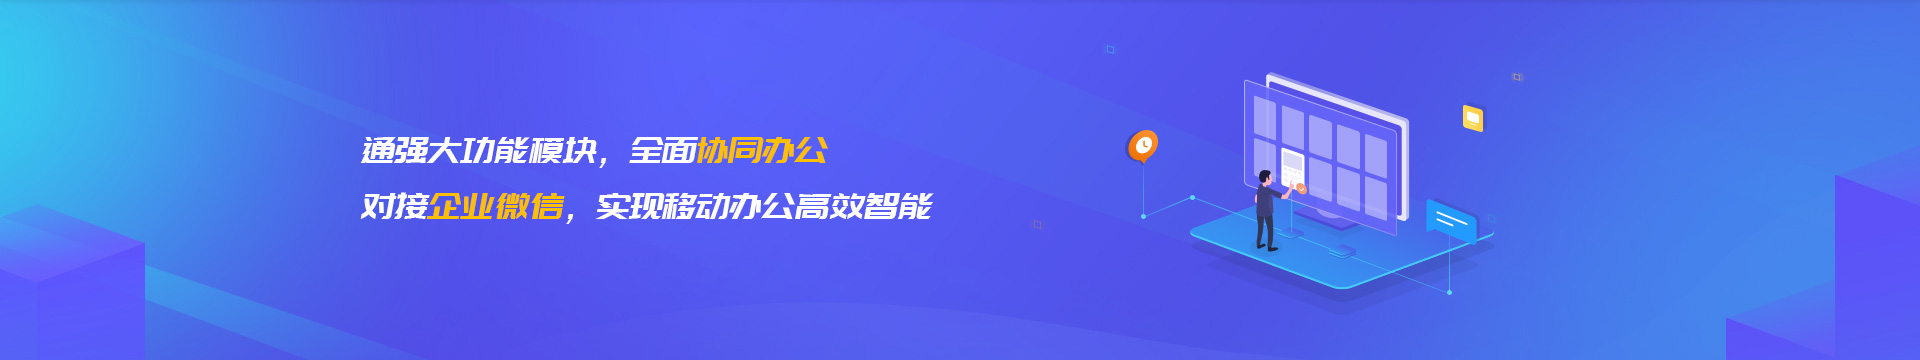 海南藏族企业微信开发